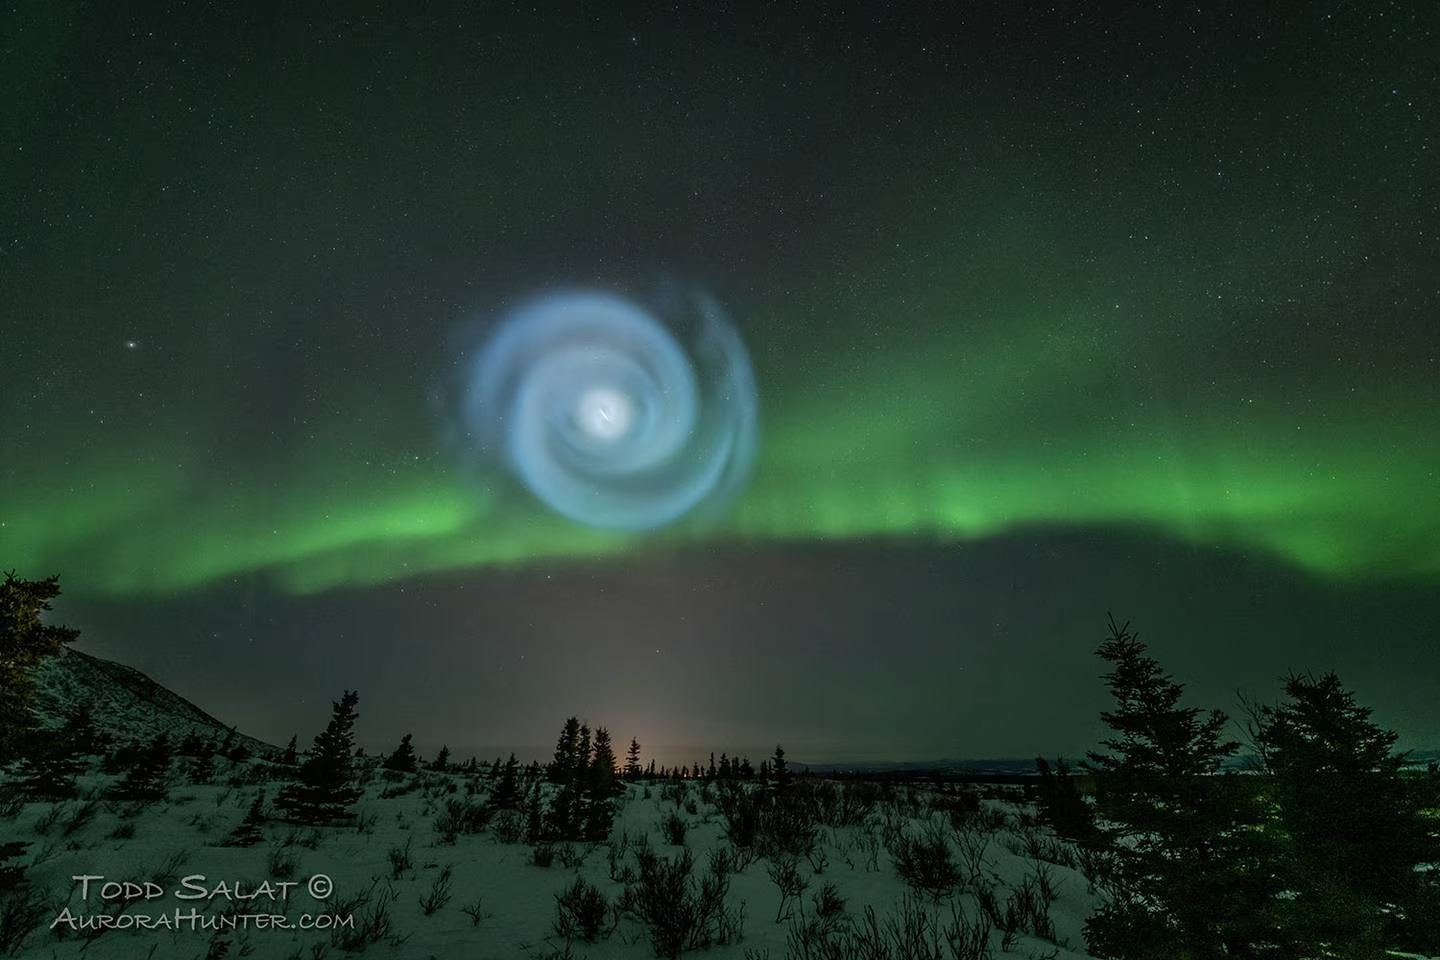 La misteriosa espiral que brilla intensamente en el cielo sobre Alaska genera preguntas y una explicación simple